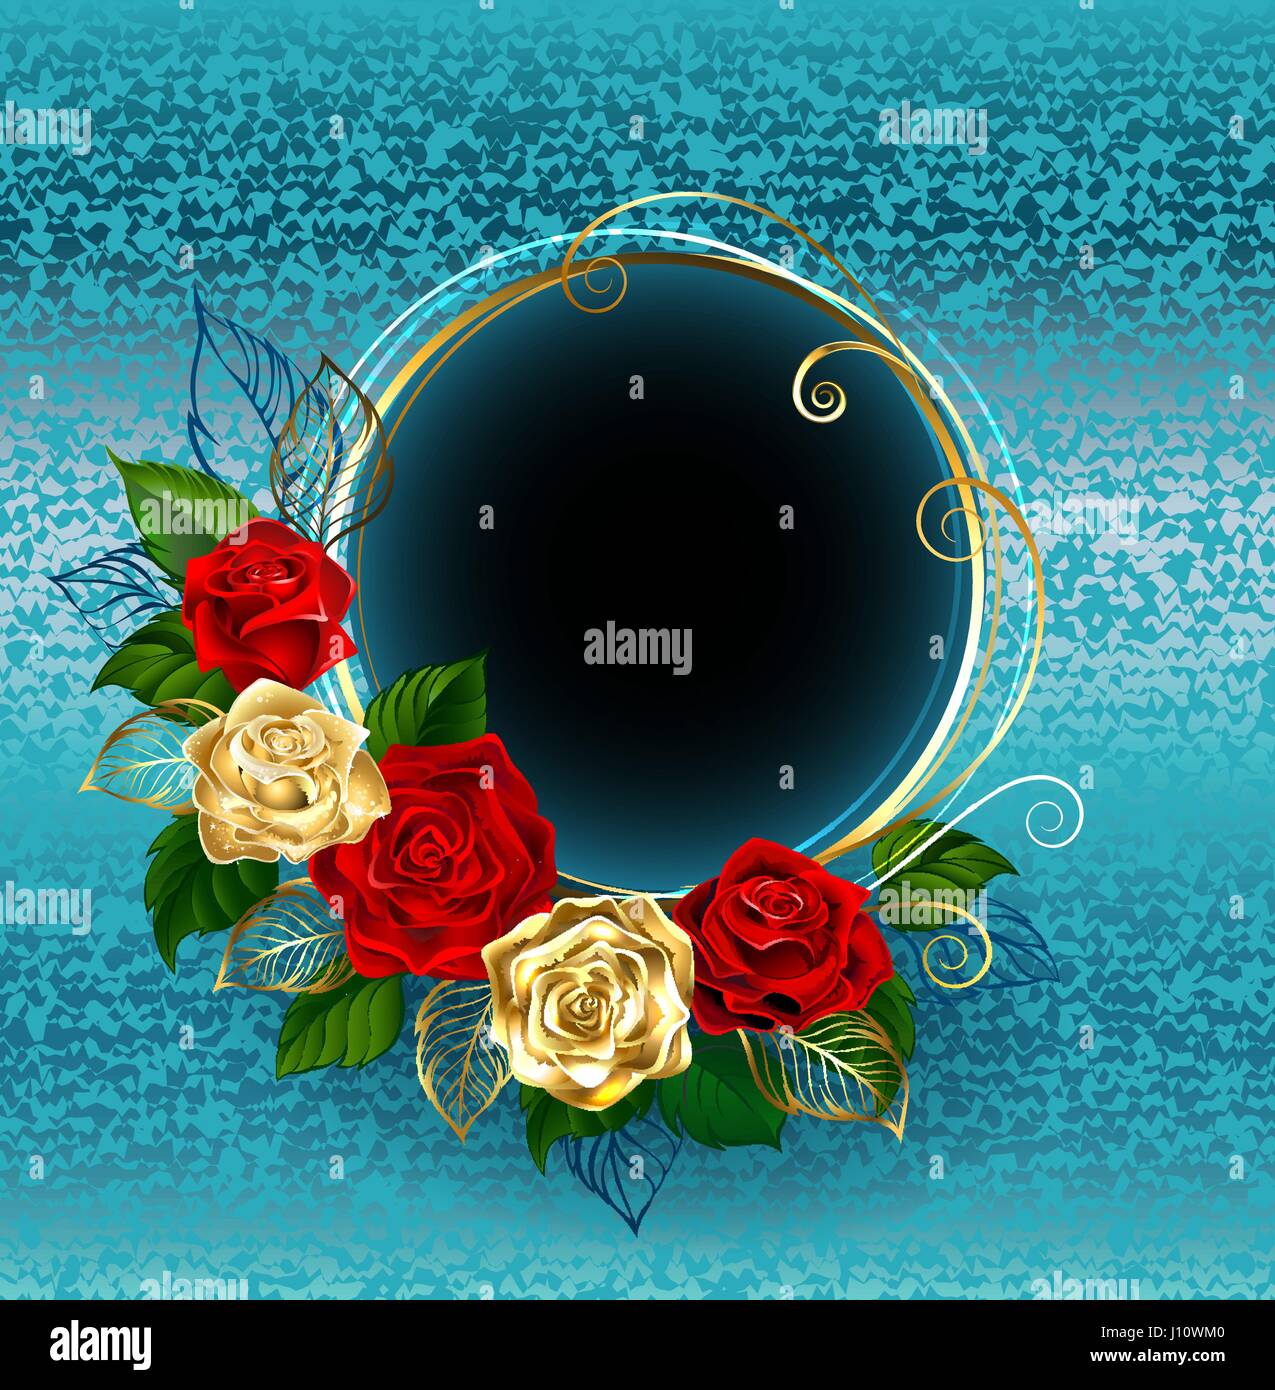 Runde Banner mit gold und rote Rosen auf einem blauen Brokat-Hintergrund. Design mit Rosen. Goldene Rose. Stock Vektor